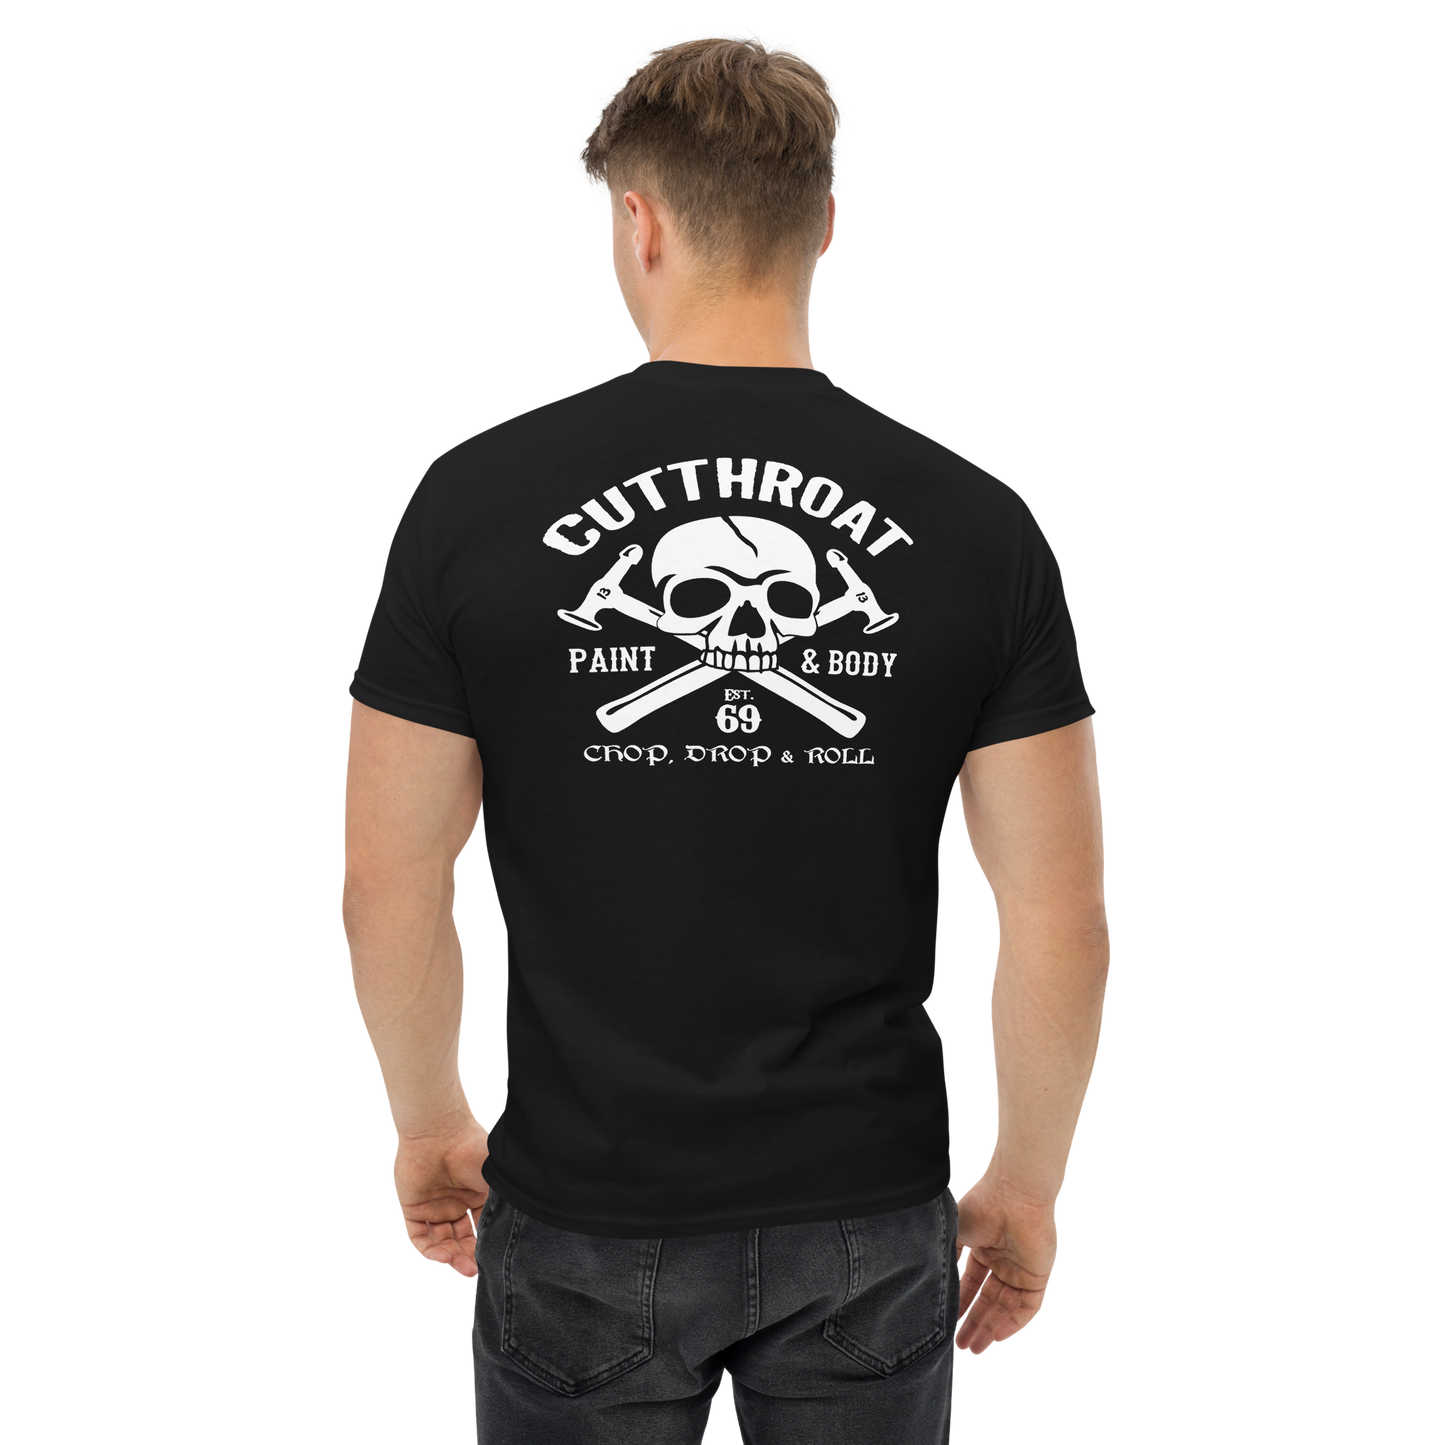 Cutthroat Paint & Body Short Sleeve T-Shirt